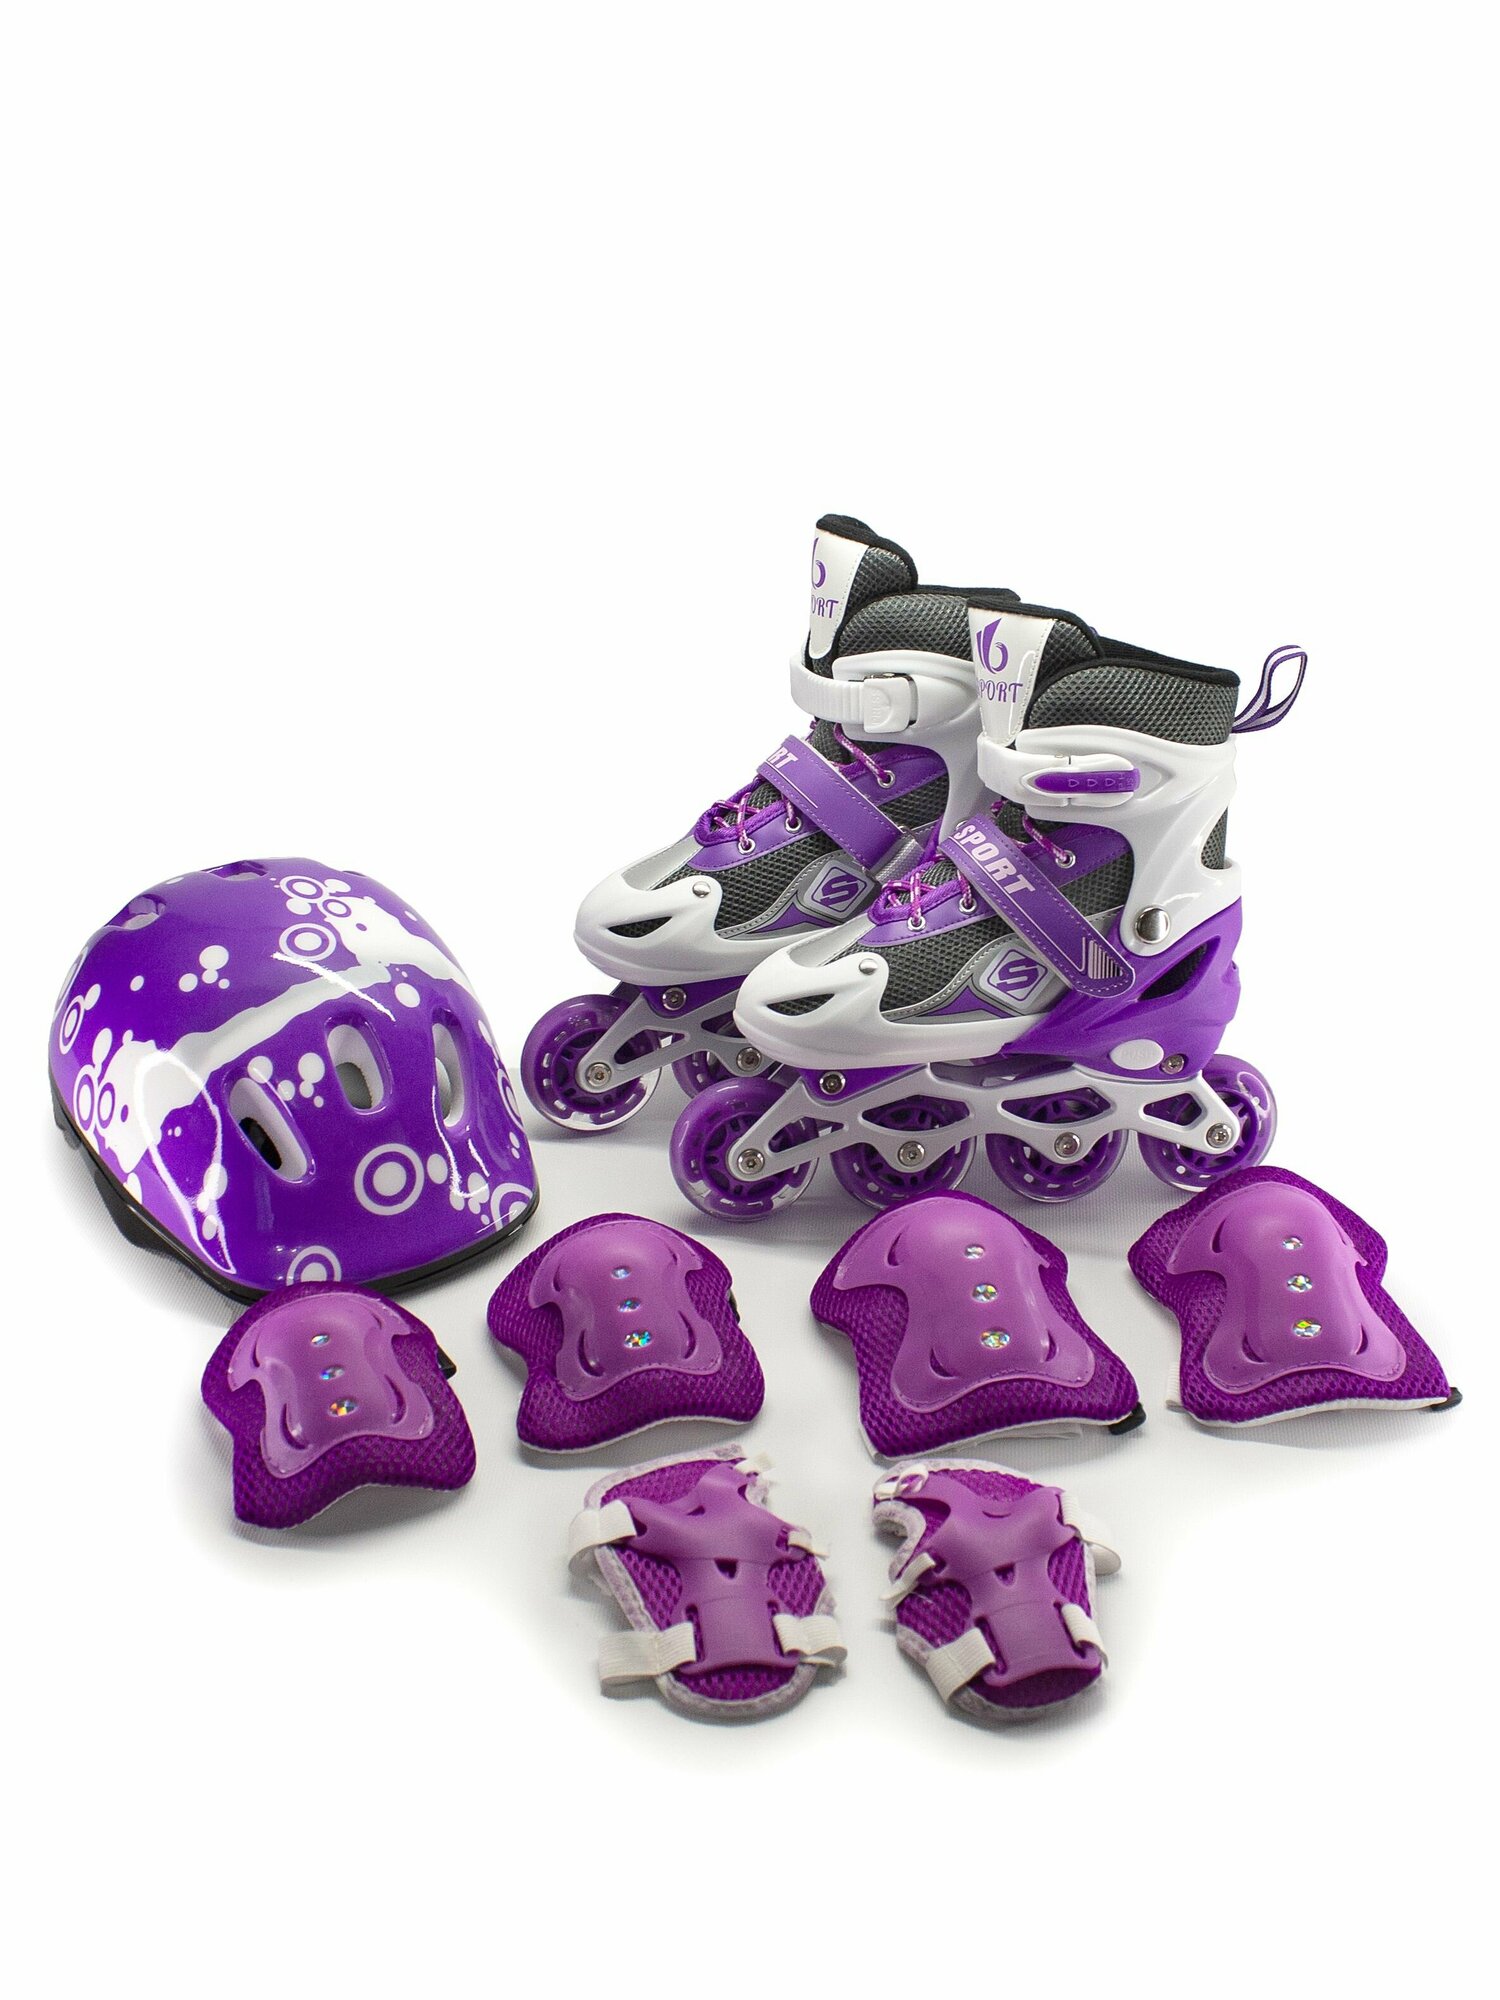 Фиолетовые раздвижные роликовые коньки, шлем, защита коленей, локтей, кистей, сумка, размер 35-38